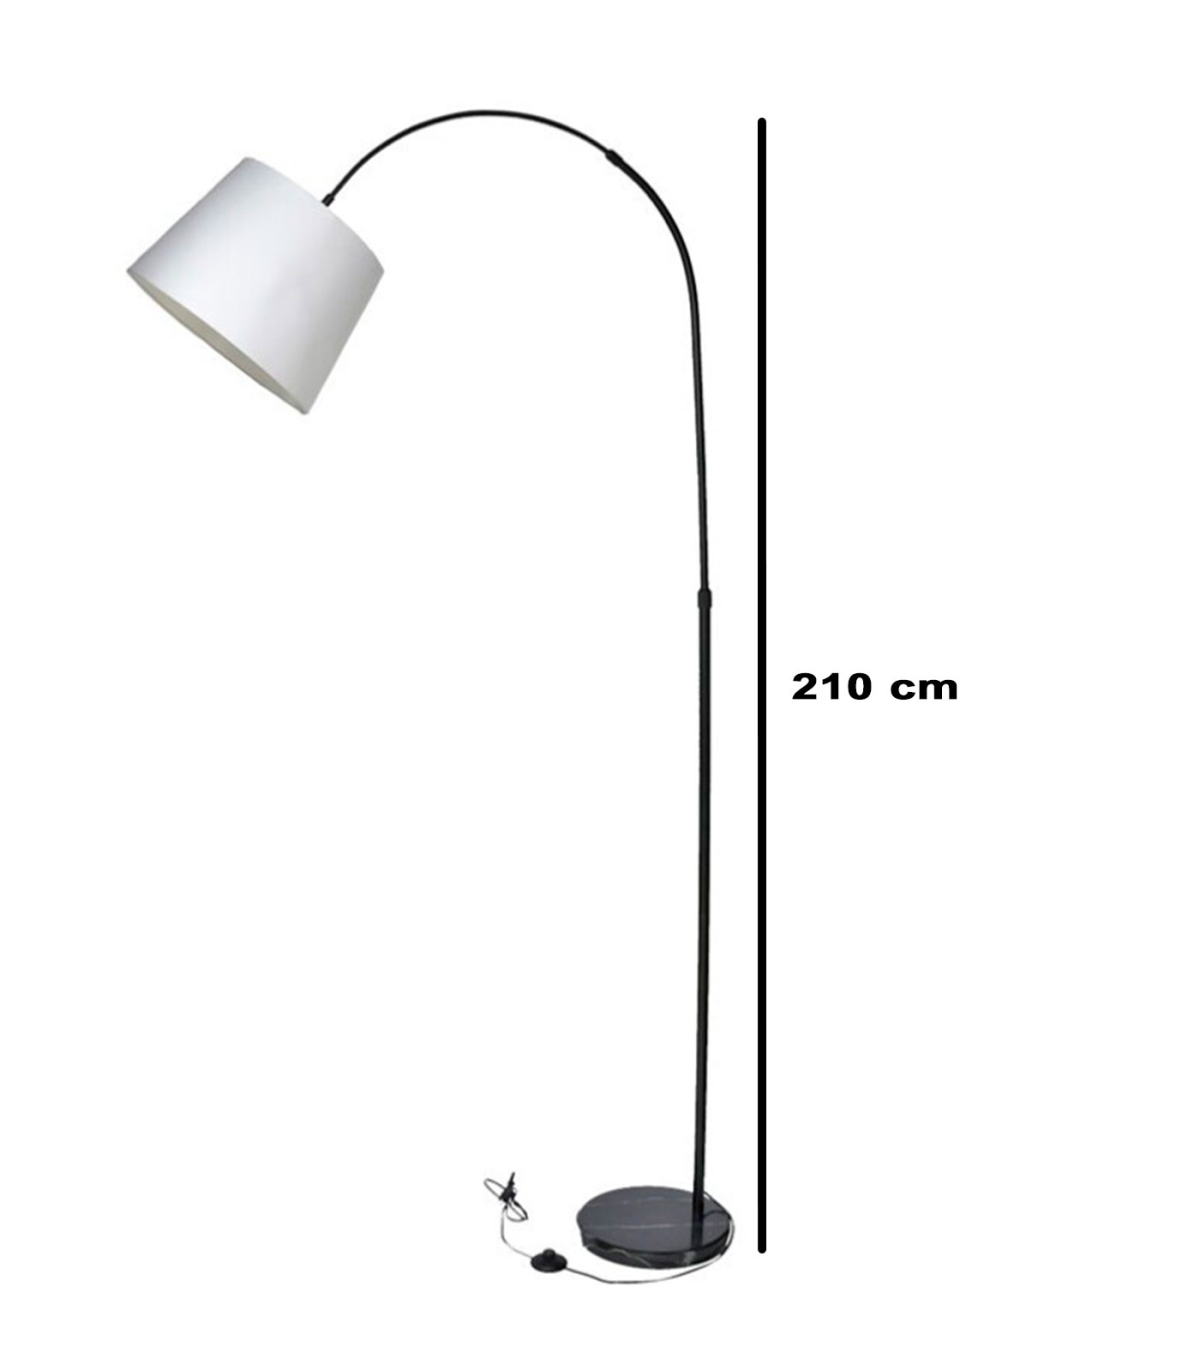 Tradineur - Lámpara de pie de metal y tulipa de tela, brazo oscilante, lámpara de lectura, interruptor de y enchufe, casqu